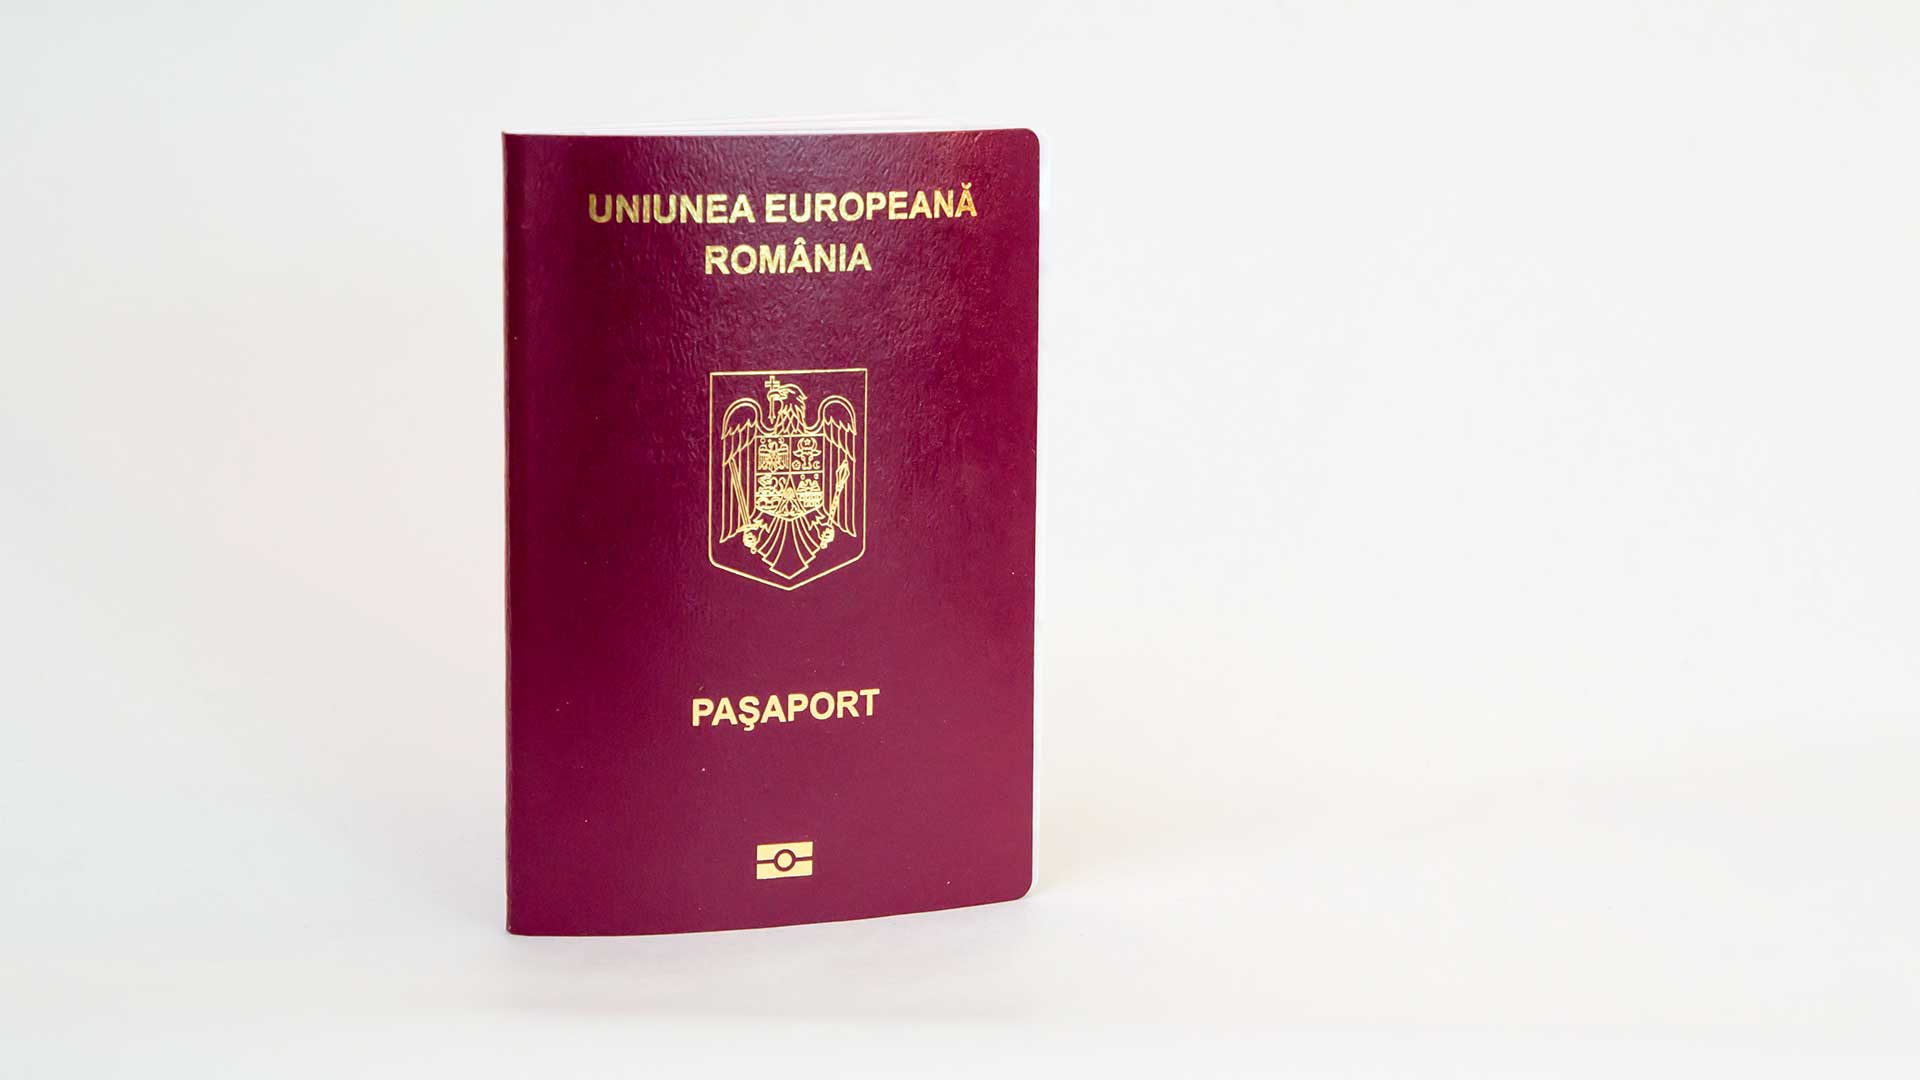 Паспорт Румынии, присягу которой надо сдавать для получения гражданства